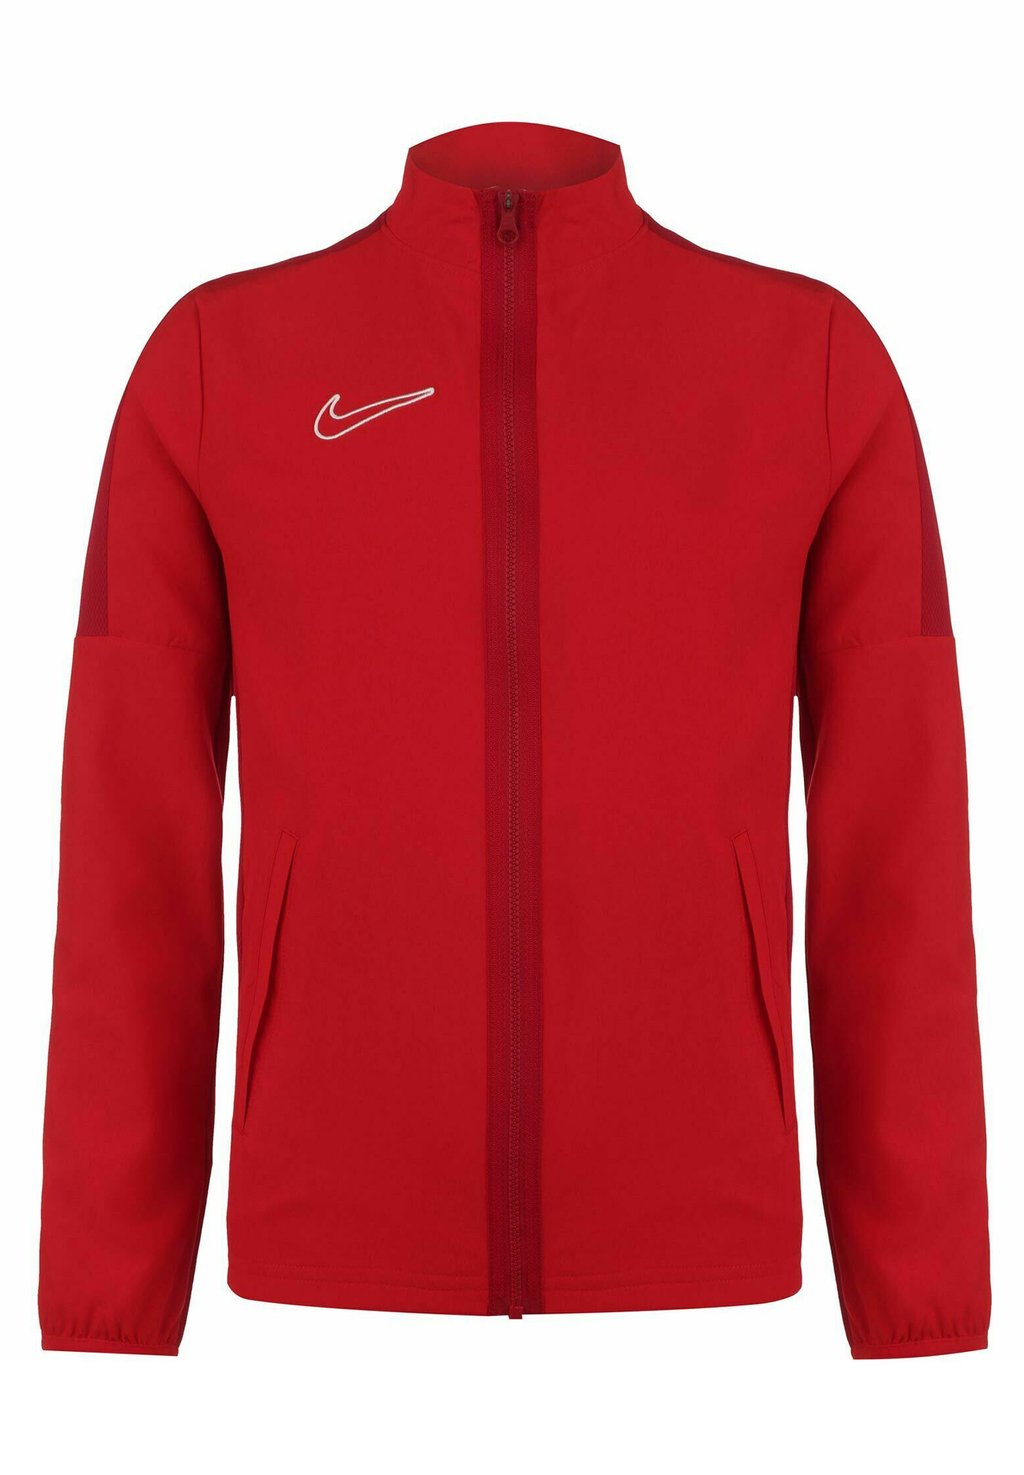 Куртка спортивная Academy 23 Nike, цвет university red gym red white шорты nike woven hbr shorts цвет university red gym red white